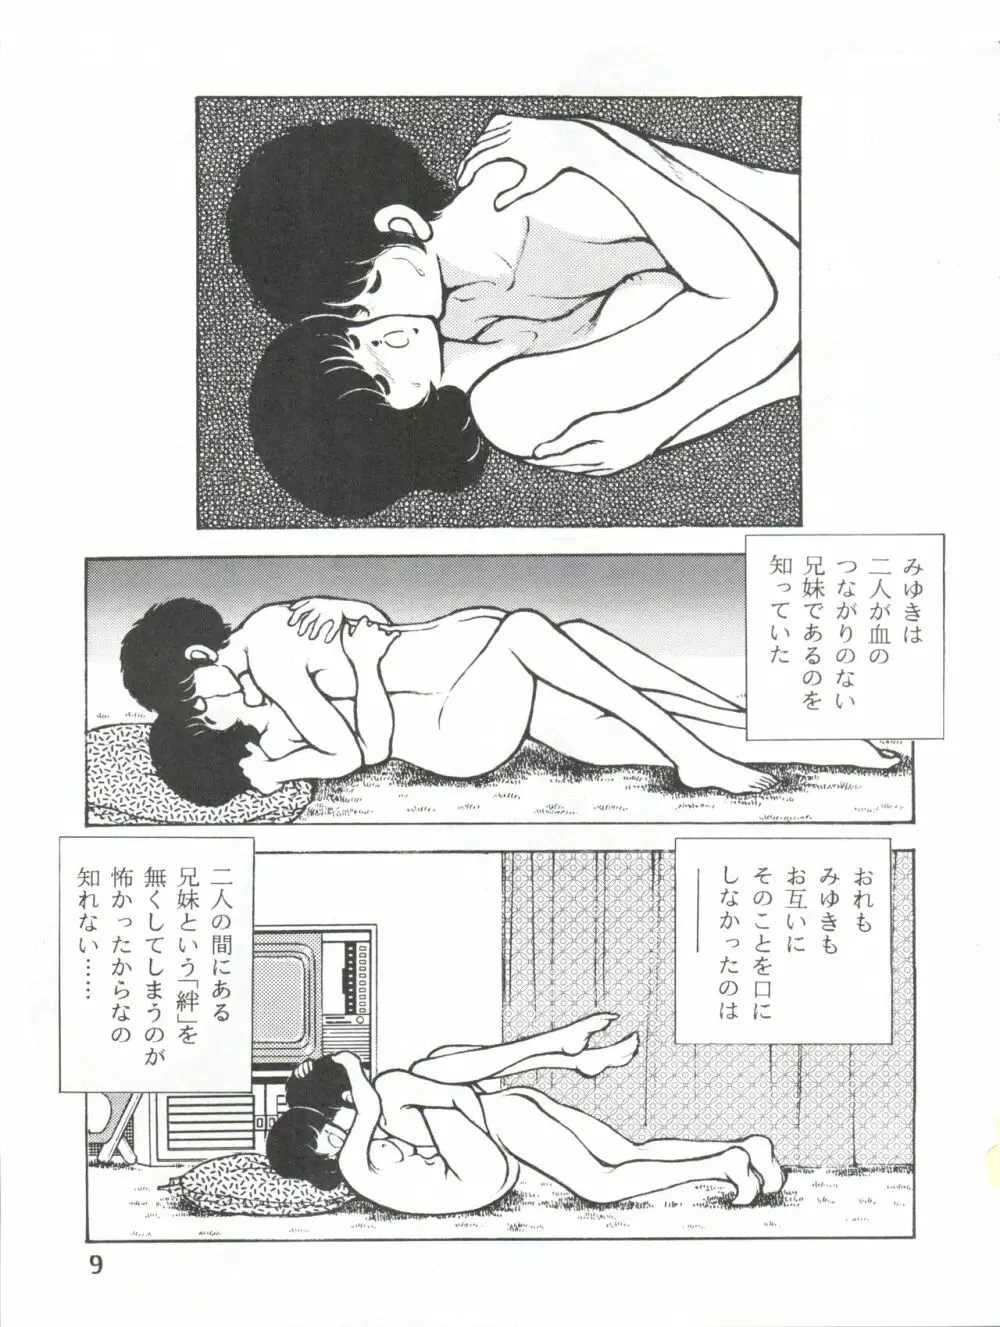 [STUDIO写裸苦 (写裸苦聖也)] 感触 -TOUCH- vol.3 ver.99 (みゆき) 9ページ